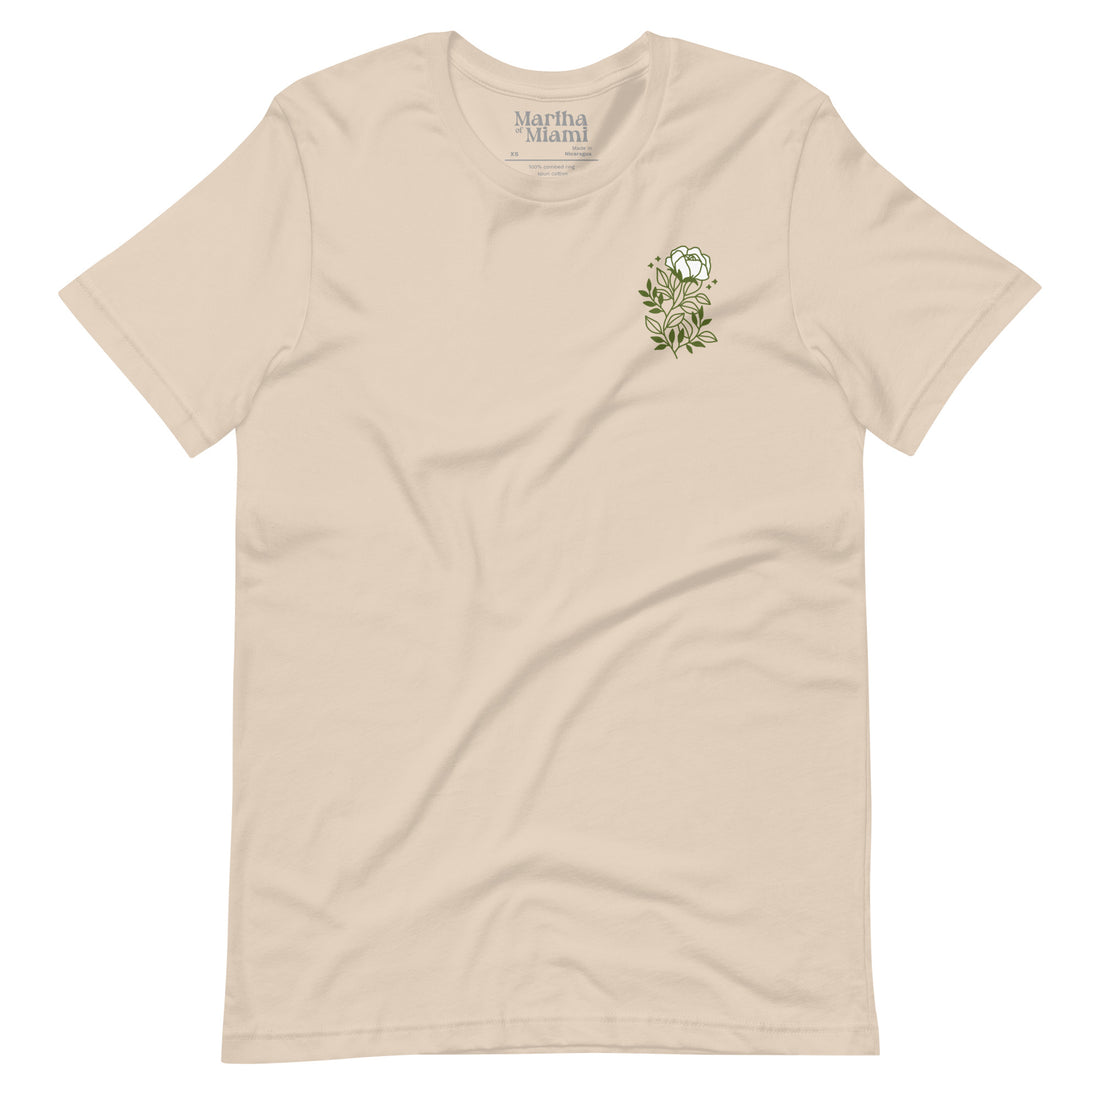 Cultivo Una Rosa Blanca T-Shirt